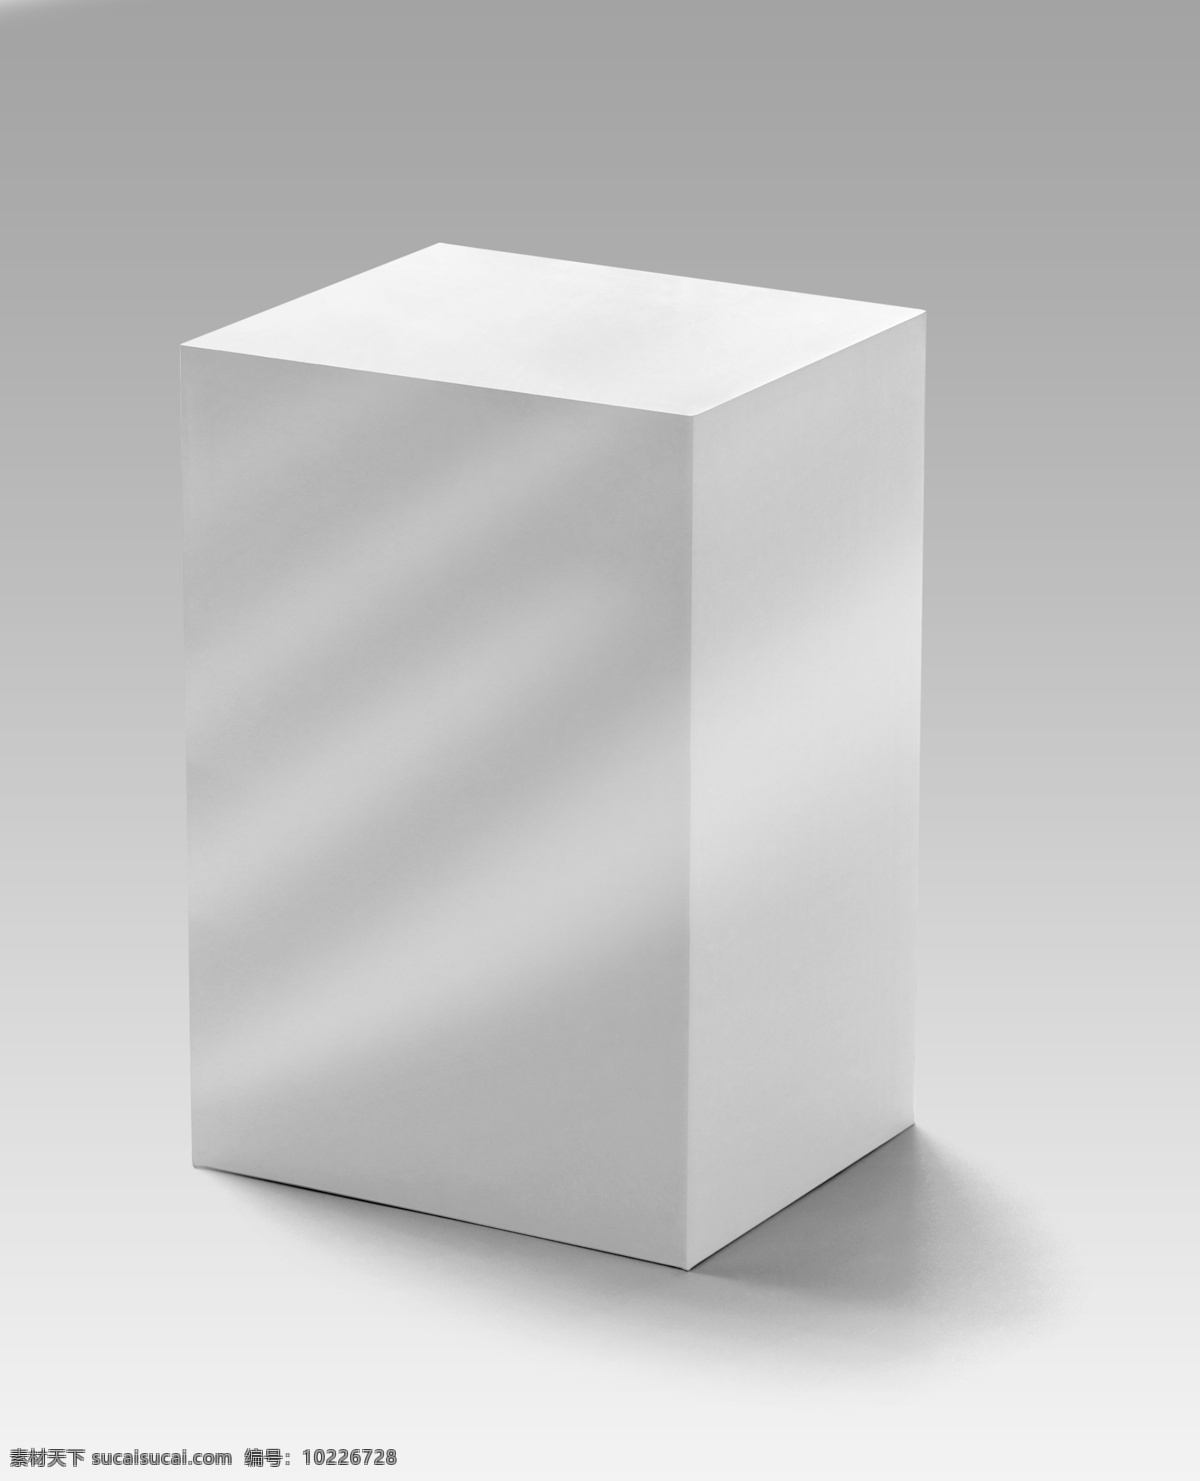 礼盒 袋子 包装设计 样机 智能对象 一键生成 正方形盒子 纸盒 礼品盒 盒子包装 贴图模板 盒子 简约 立体 效果图 模版 展示效果 包装效果图 立体展示 创意模版 精美 高端